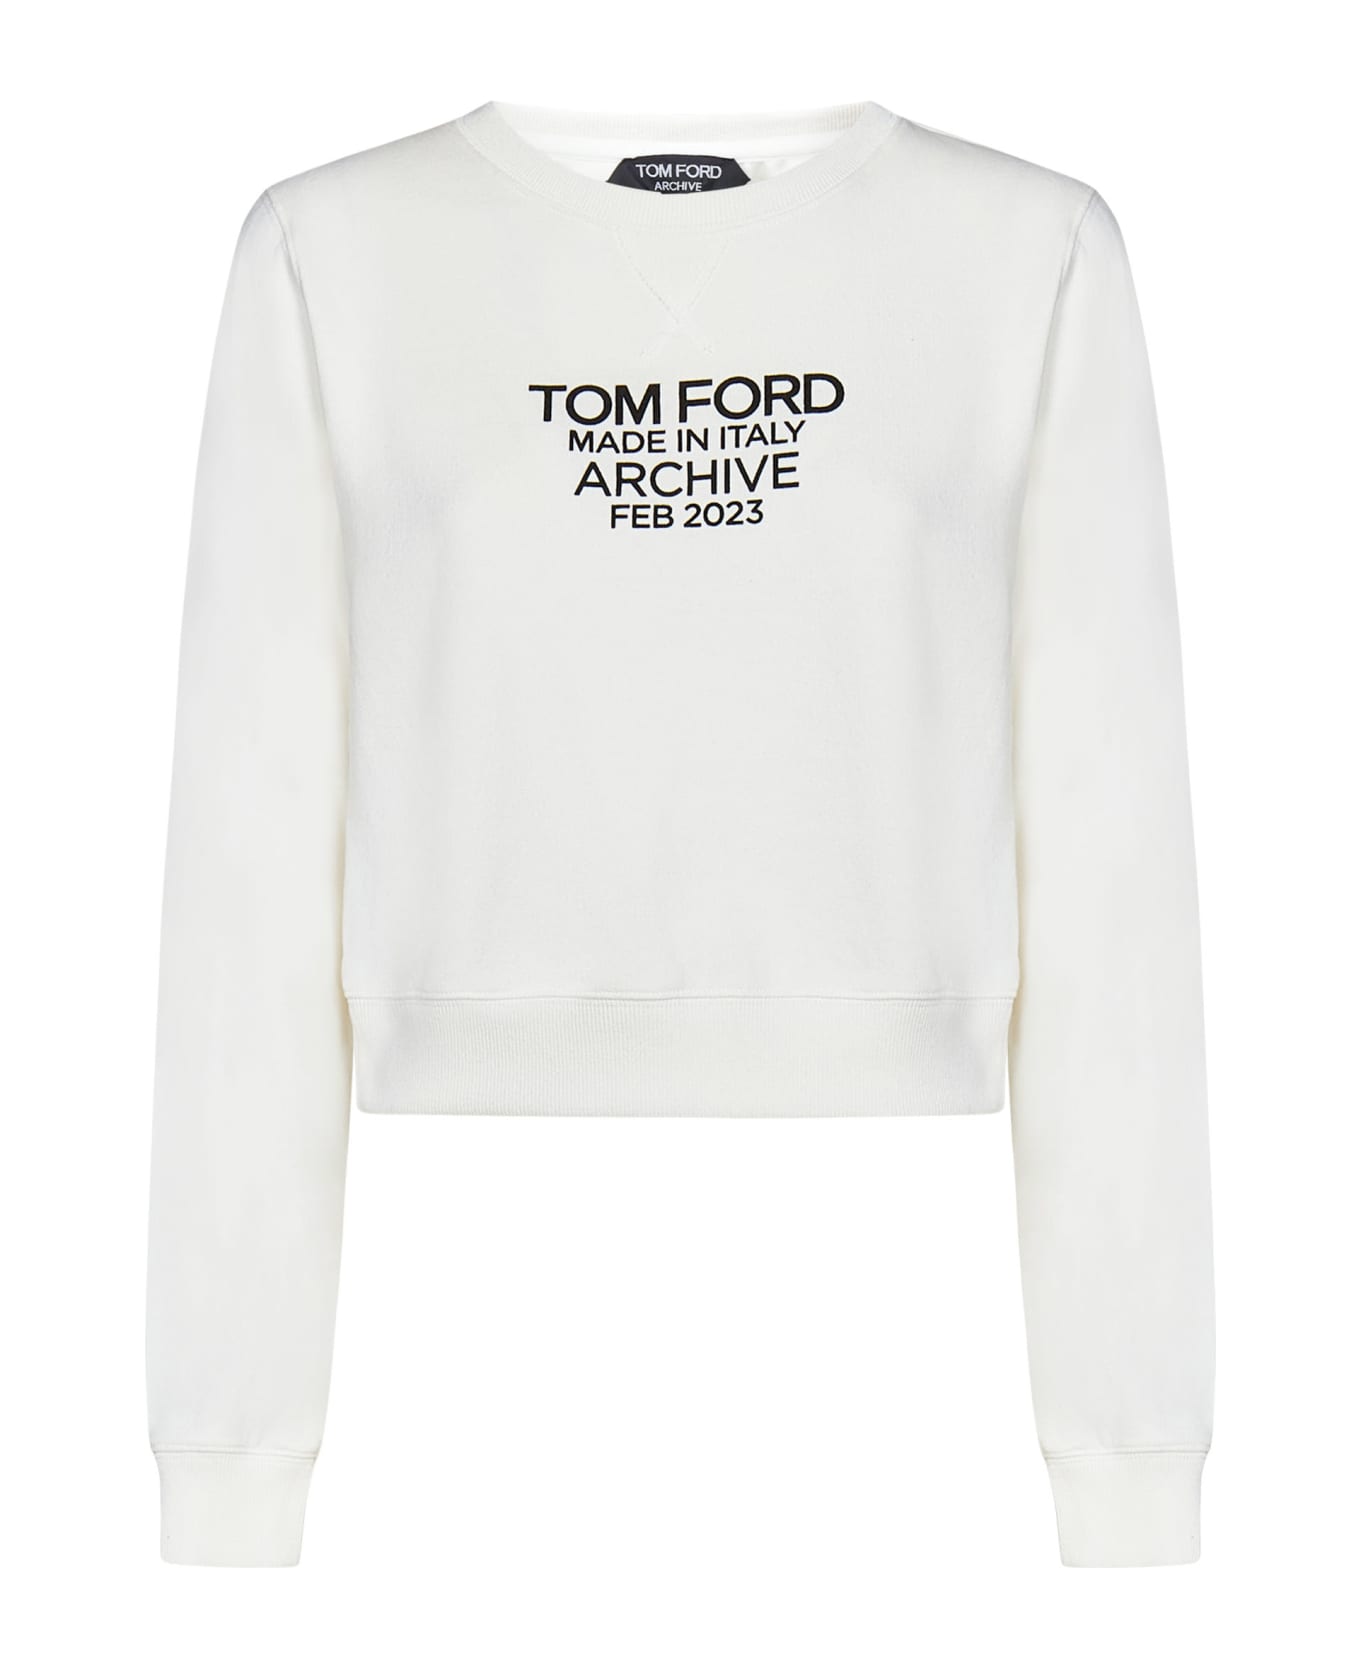 Tom Ford Sweatshirt - White フリース